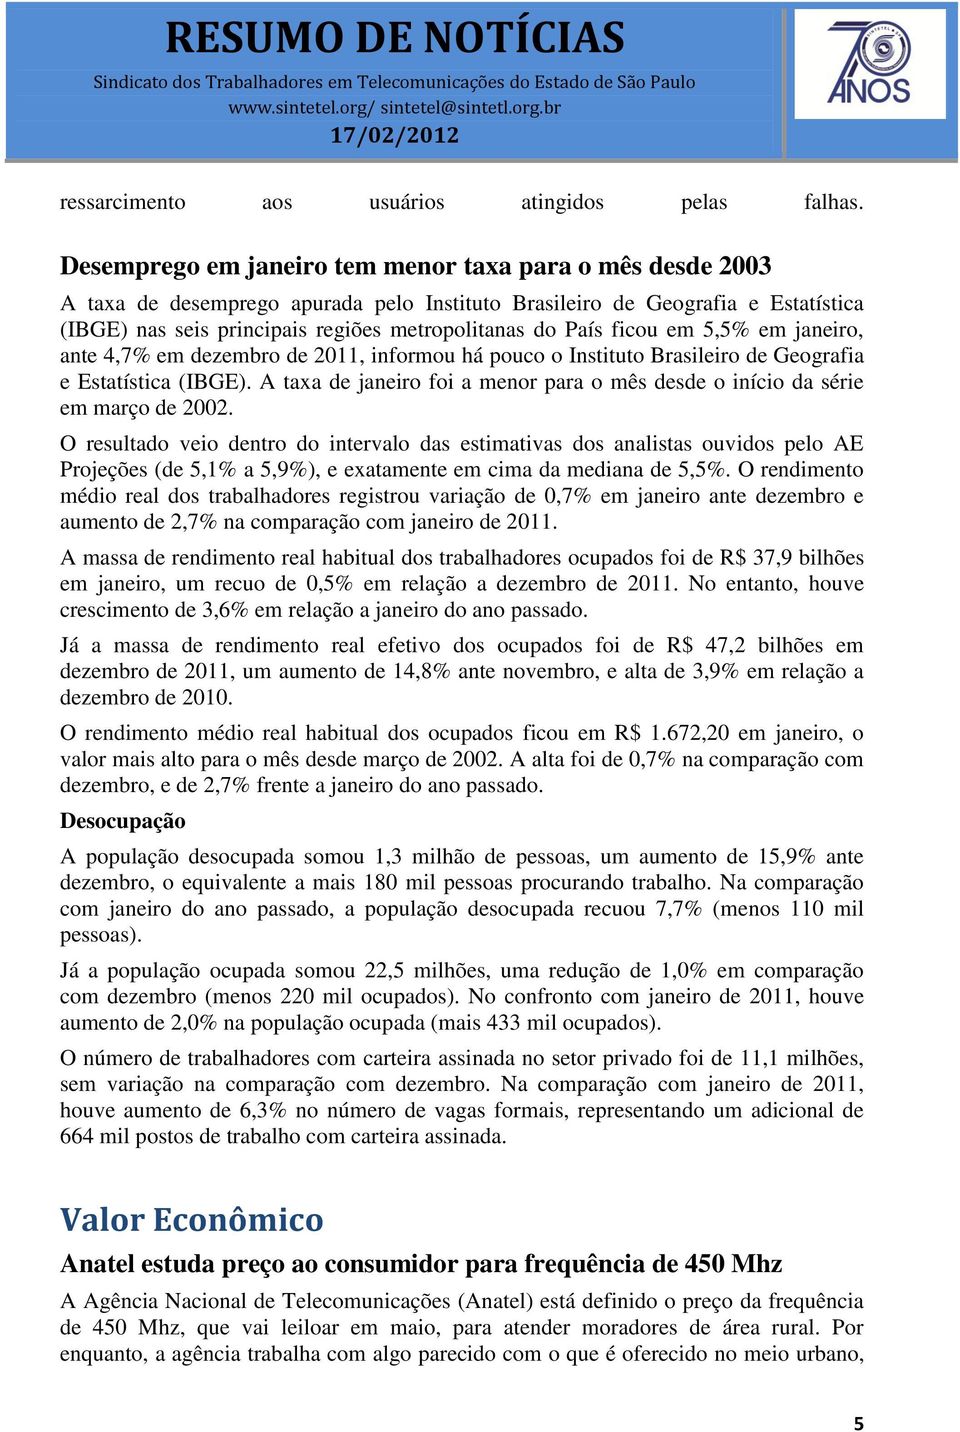 ficou em 5,5% em janeiro, ante 4,7% em dezembro de 2011, informou há pouco o Instituto Brasileiro de Geografia e Estatística (IBGE).